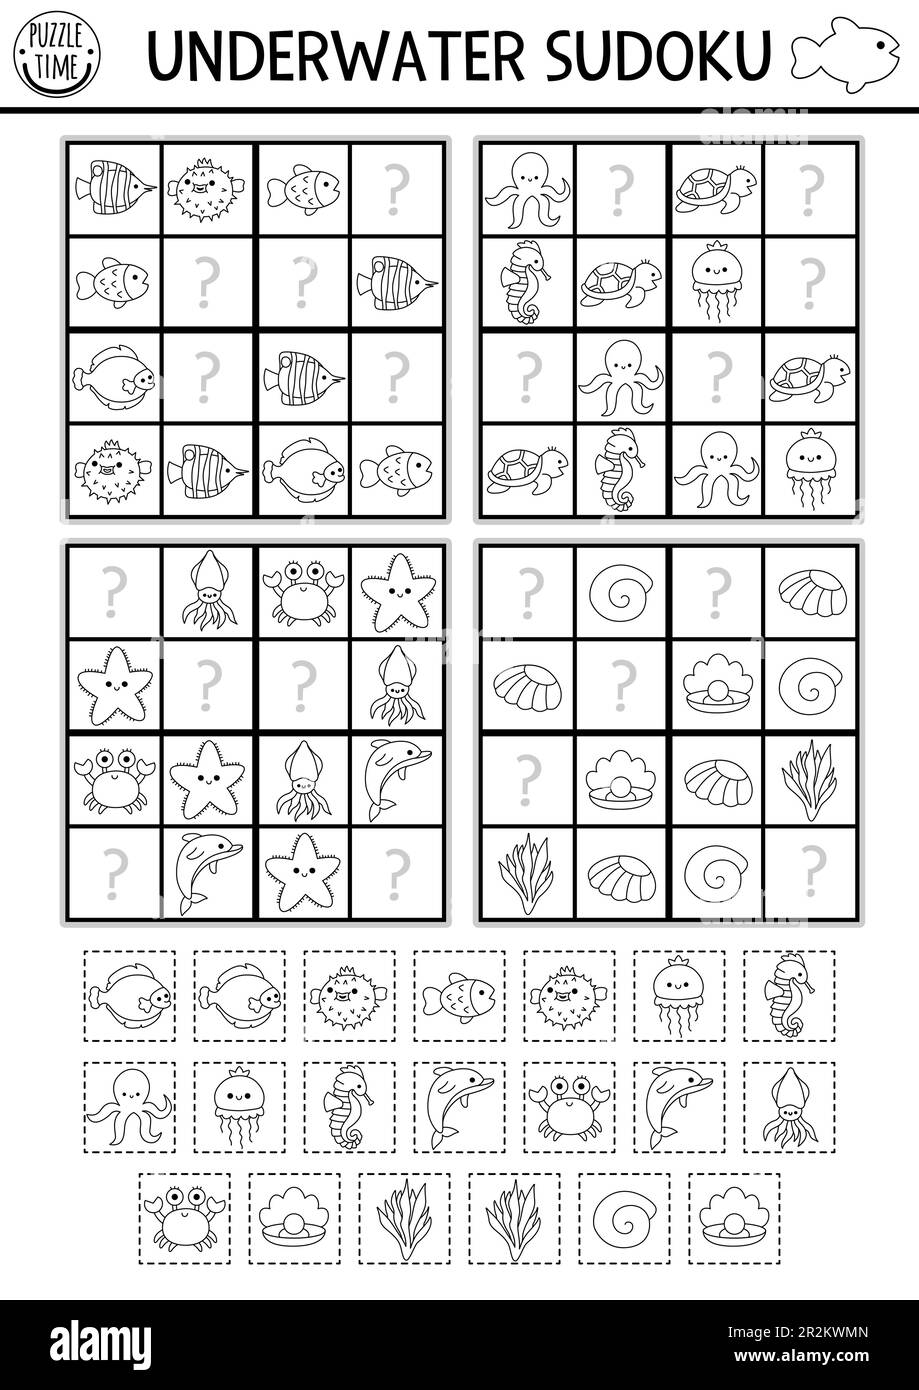 Vector Schwarz-Weiß-Sudoku-Puzzle für Kinder mit Bildern. Einfaches Quiz zum Meeresleben mit Schneide- und Kleberelementen. Bildungsaktivität Stock Vektor